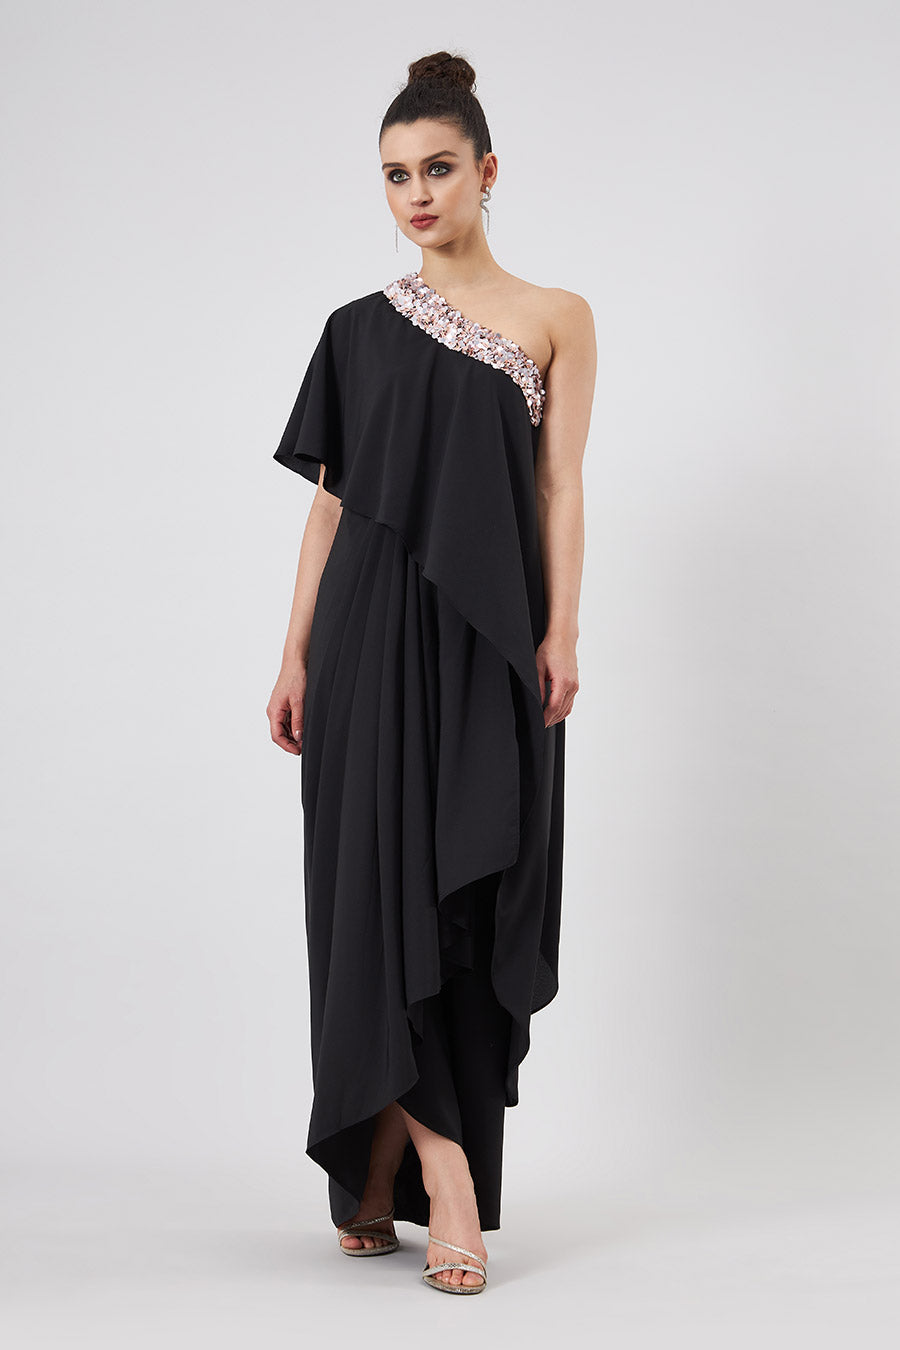 Black Embroidered One-Shoulder Drape Dress